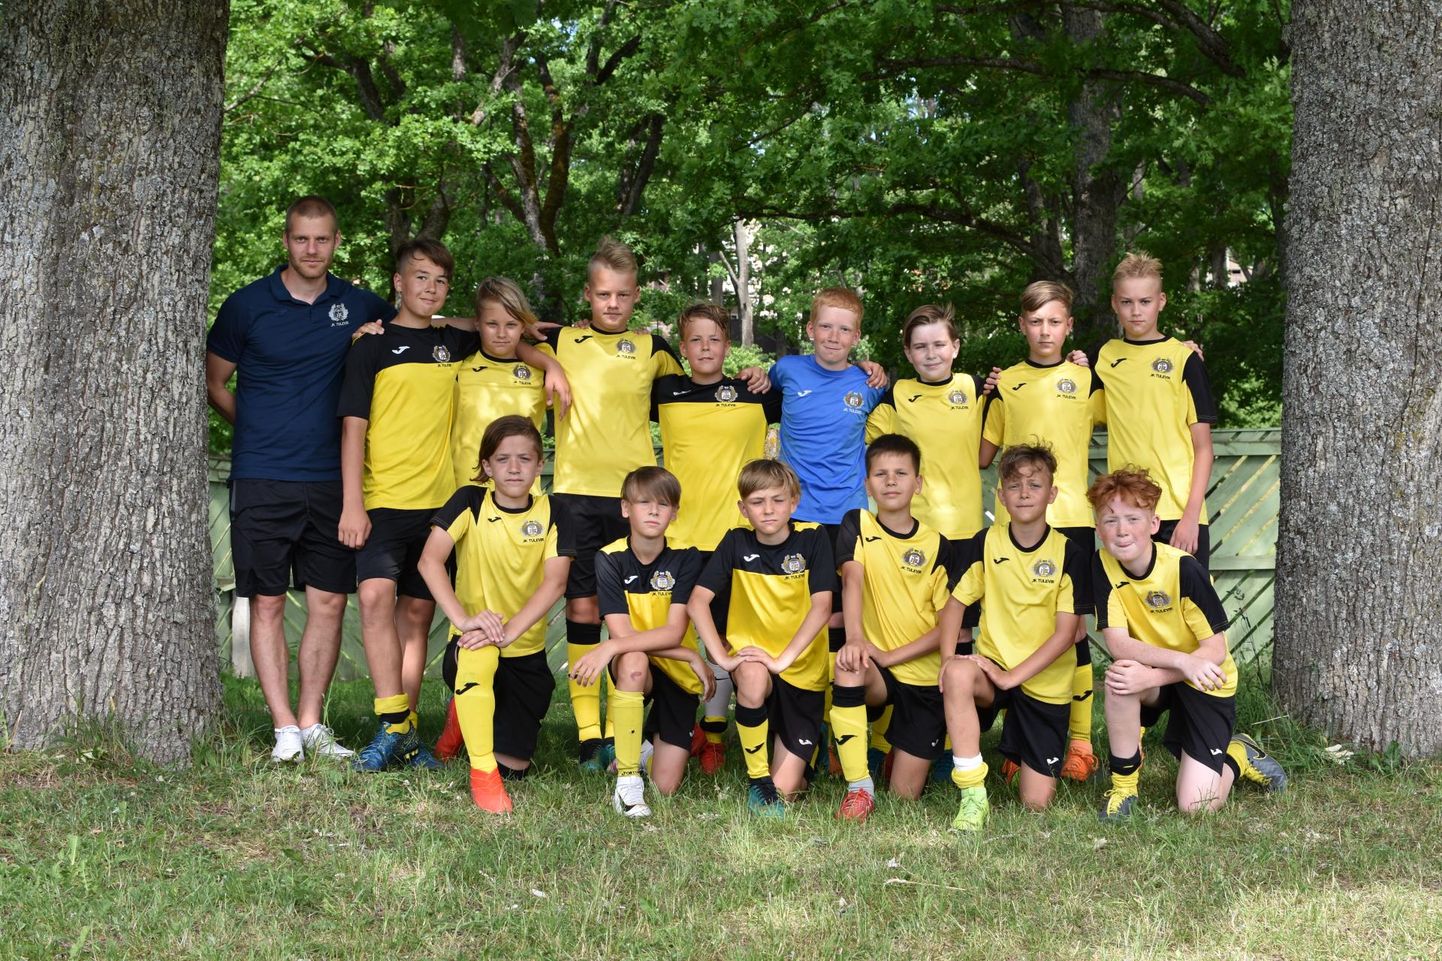 Viljandi hansapäevade ajal traditsiooniks kujunenud jalgpalliturniiril «Hansa Cup» kaitsesid kodulinna au Tuleviku poisid Kaimar Saagi juhendamisel. Tulemuseks saadi neljas koht.